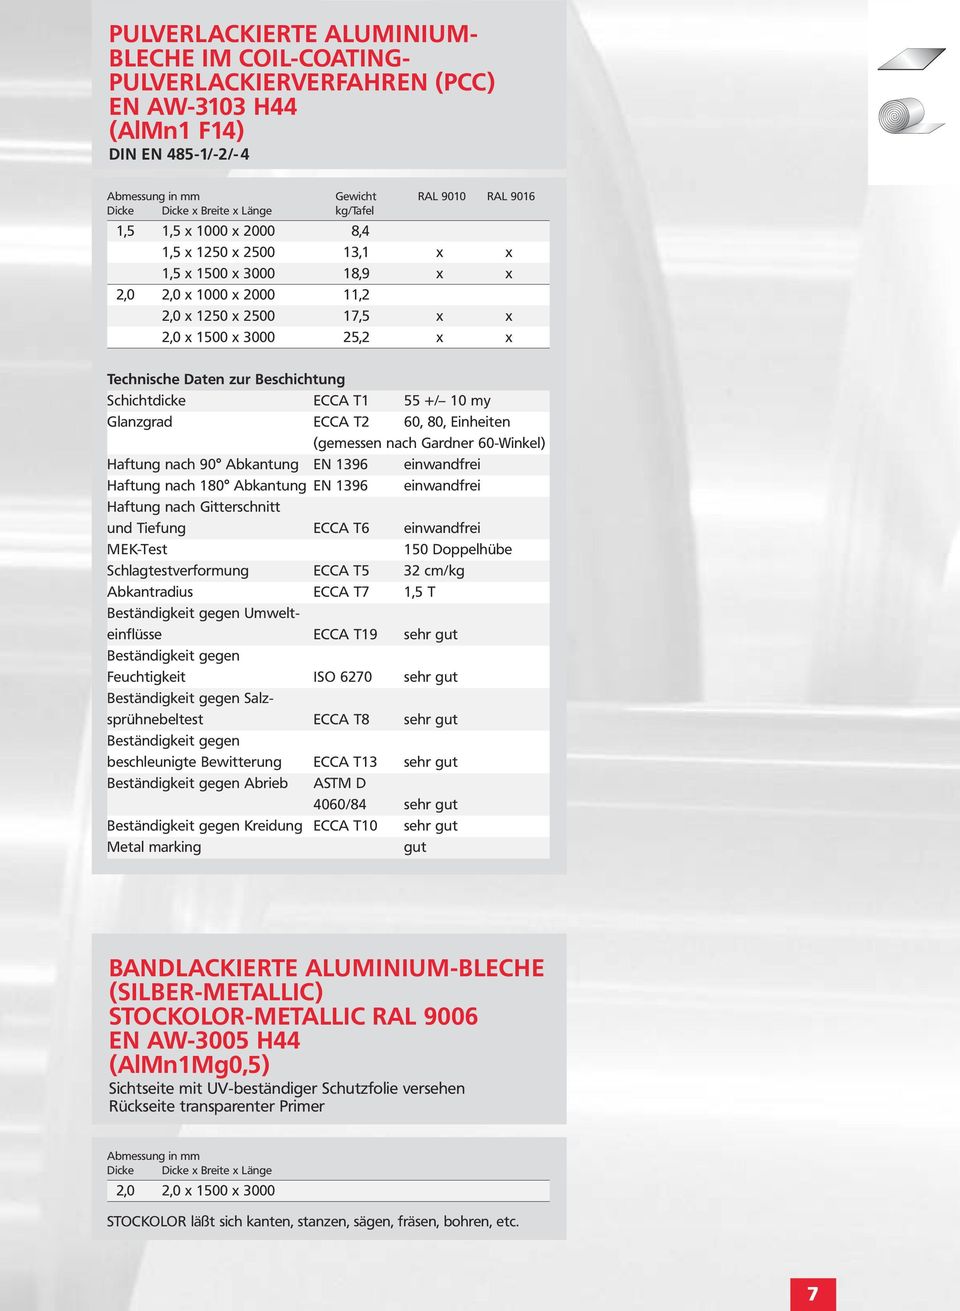 Beschichtung Schichtdicke ECCA T1 55 +/ 10 my Glanzgrad ECCA T2 60, 80, Einheiten (gemessen nach Gardner 60-Winkel) Haftung nach 90 Abkantung EN 1396 einwandfrei Haftung nach 180 Abkantung EN 1396